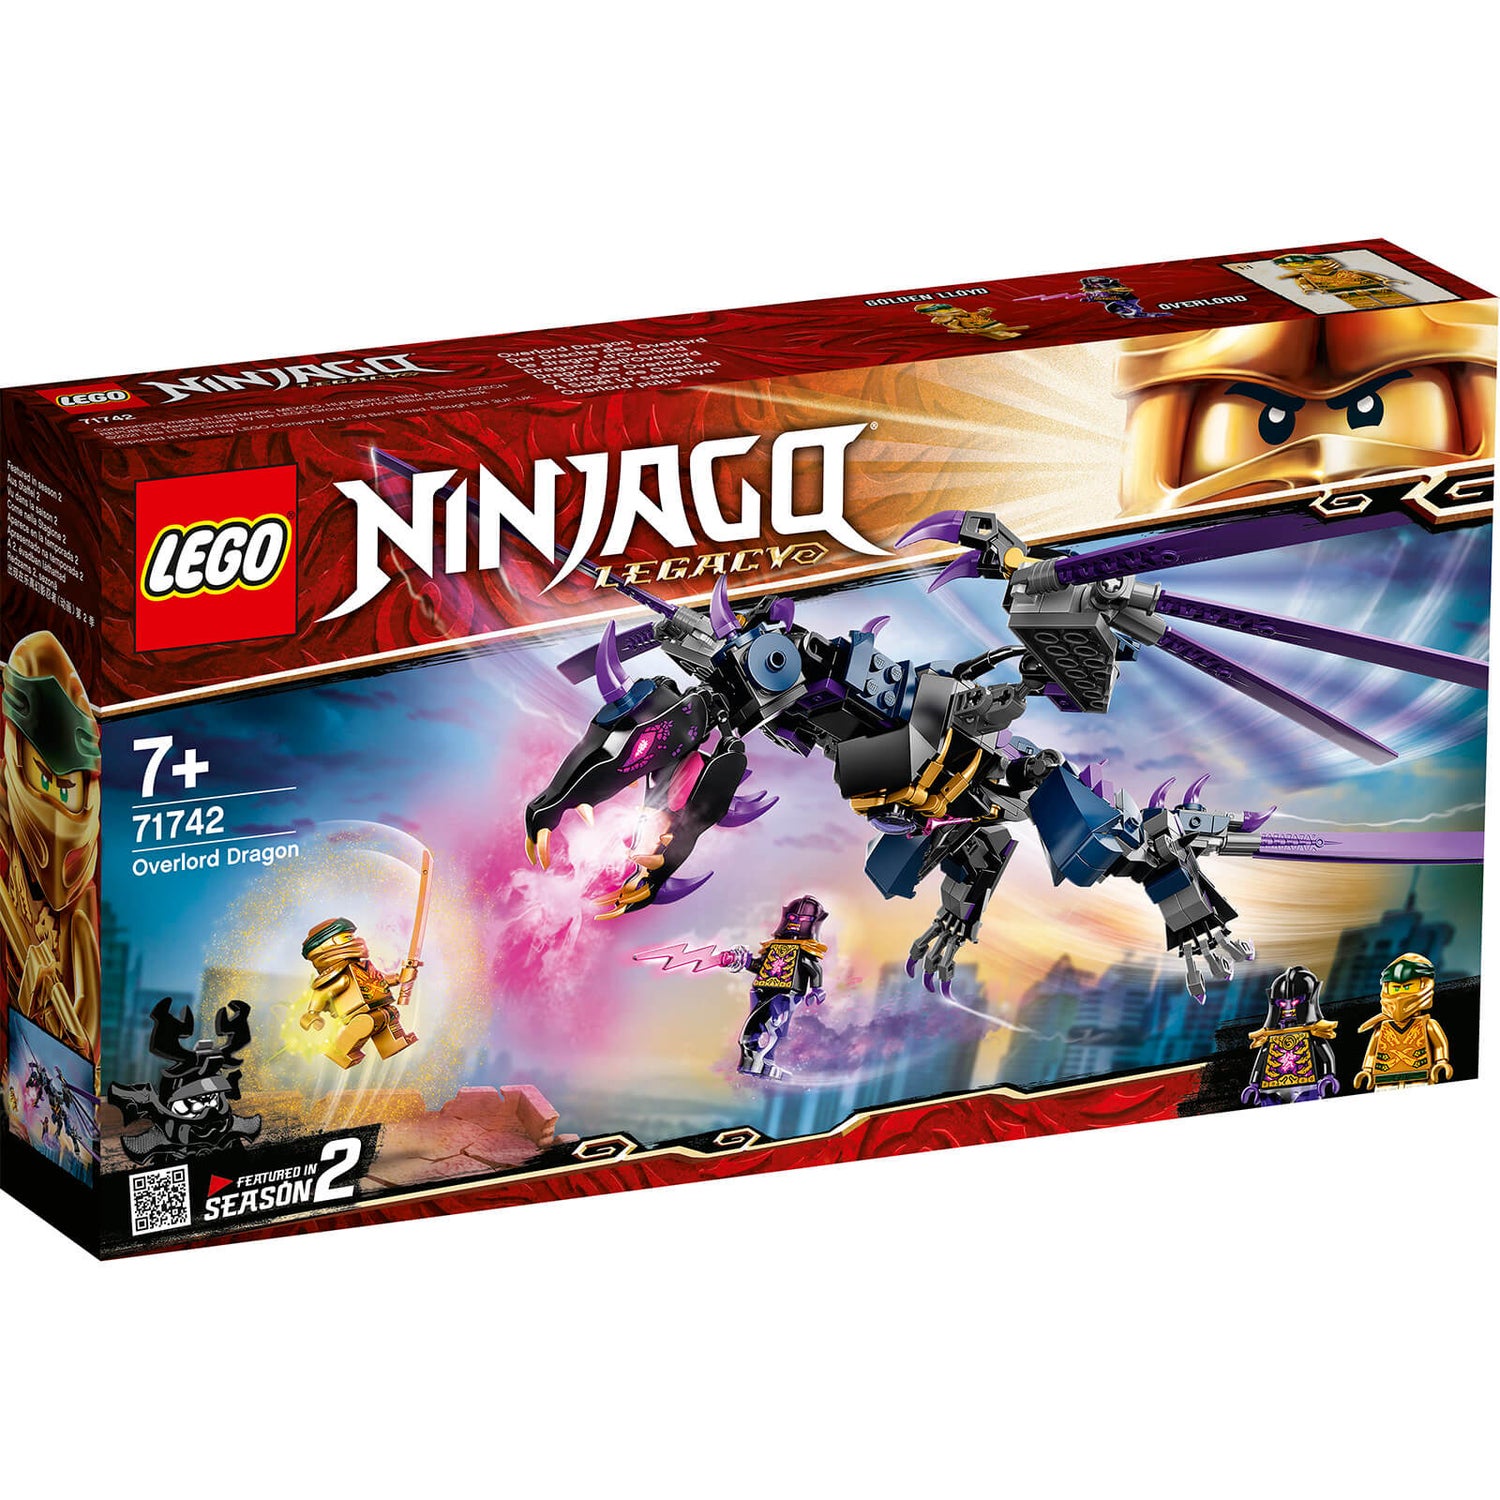 LEGO NINJAGO Overlord Dragon (71742)